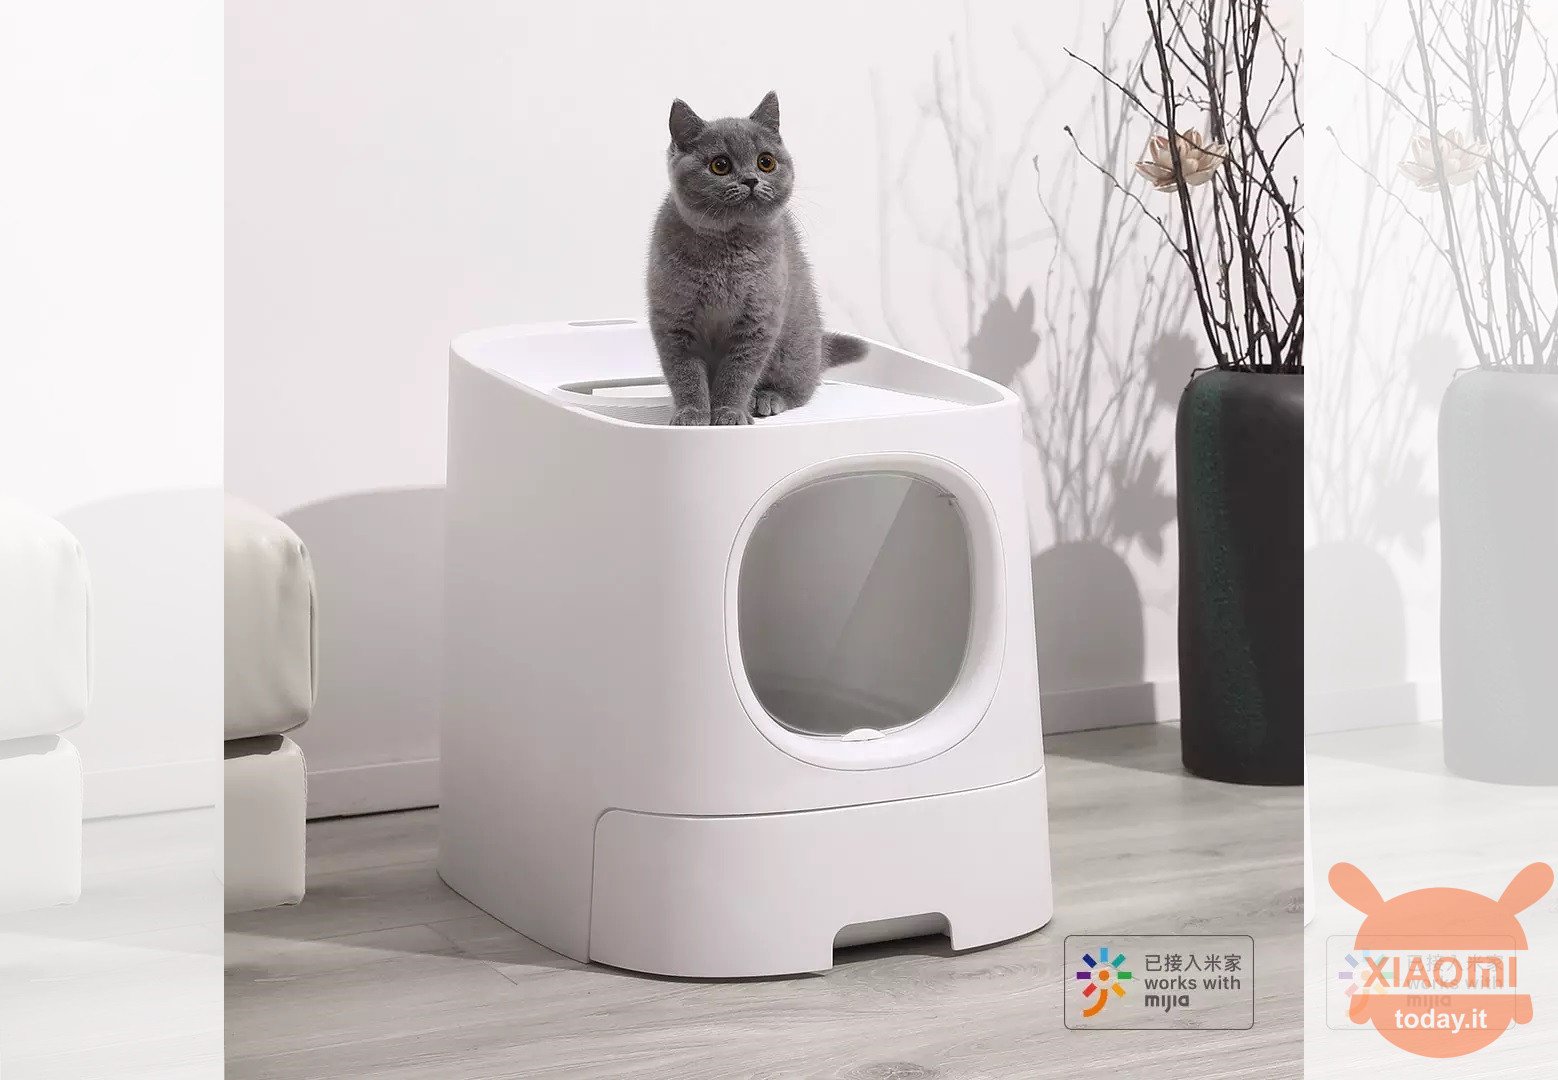 Xiaomi Homerun Cat Litter Box